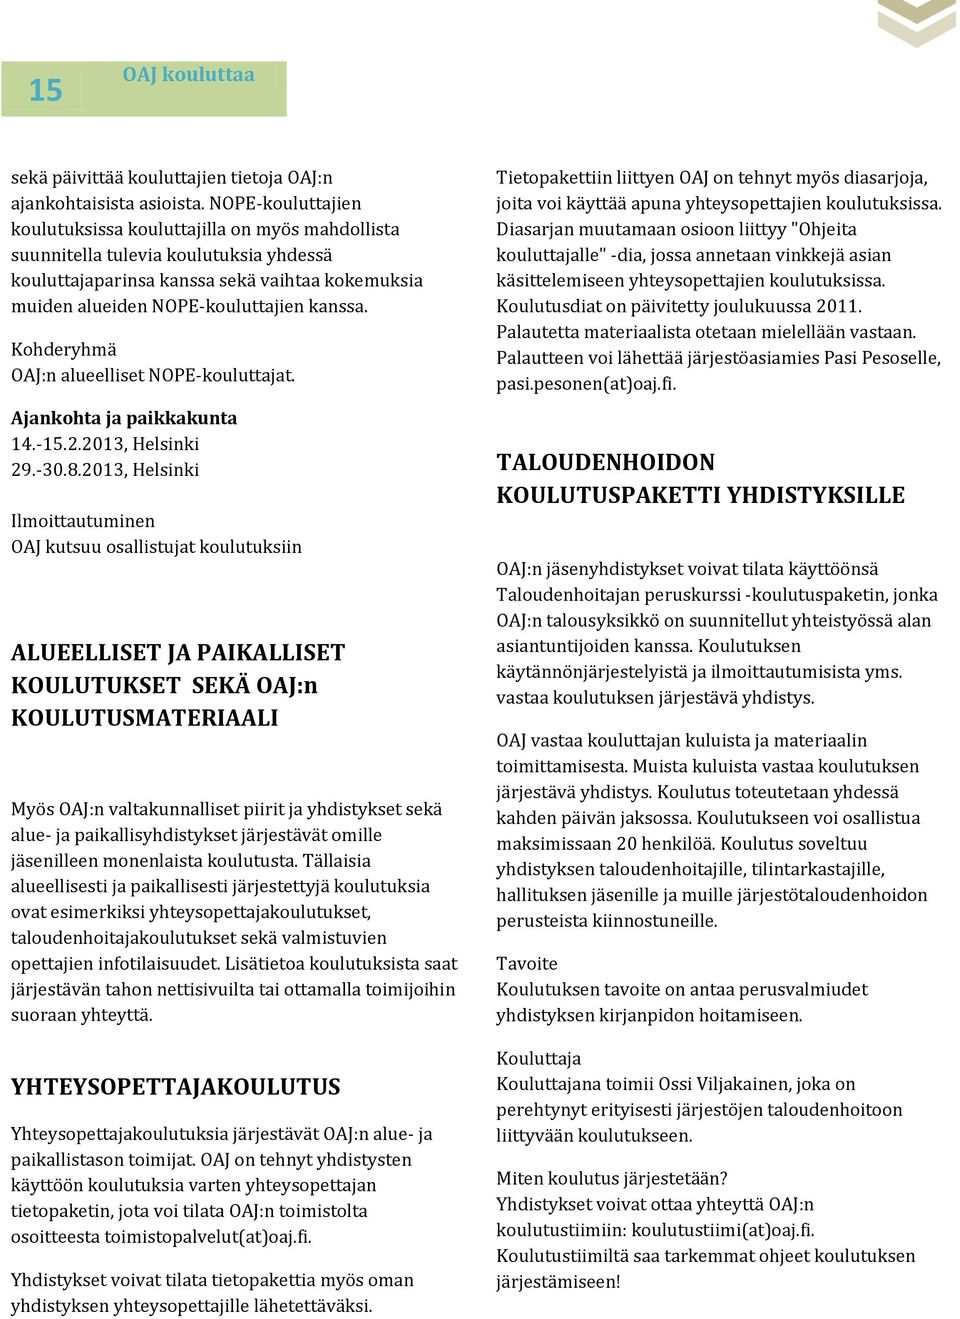 OAJ:n alueelliset NOPE-kouluttajat. 14.-15.2.2013, Helsinki 29.-30.8.